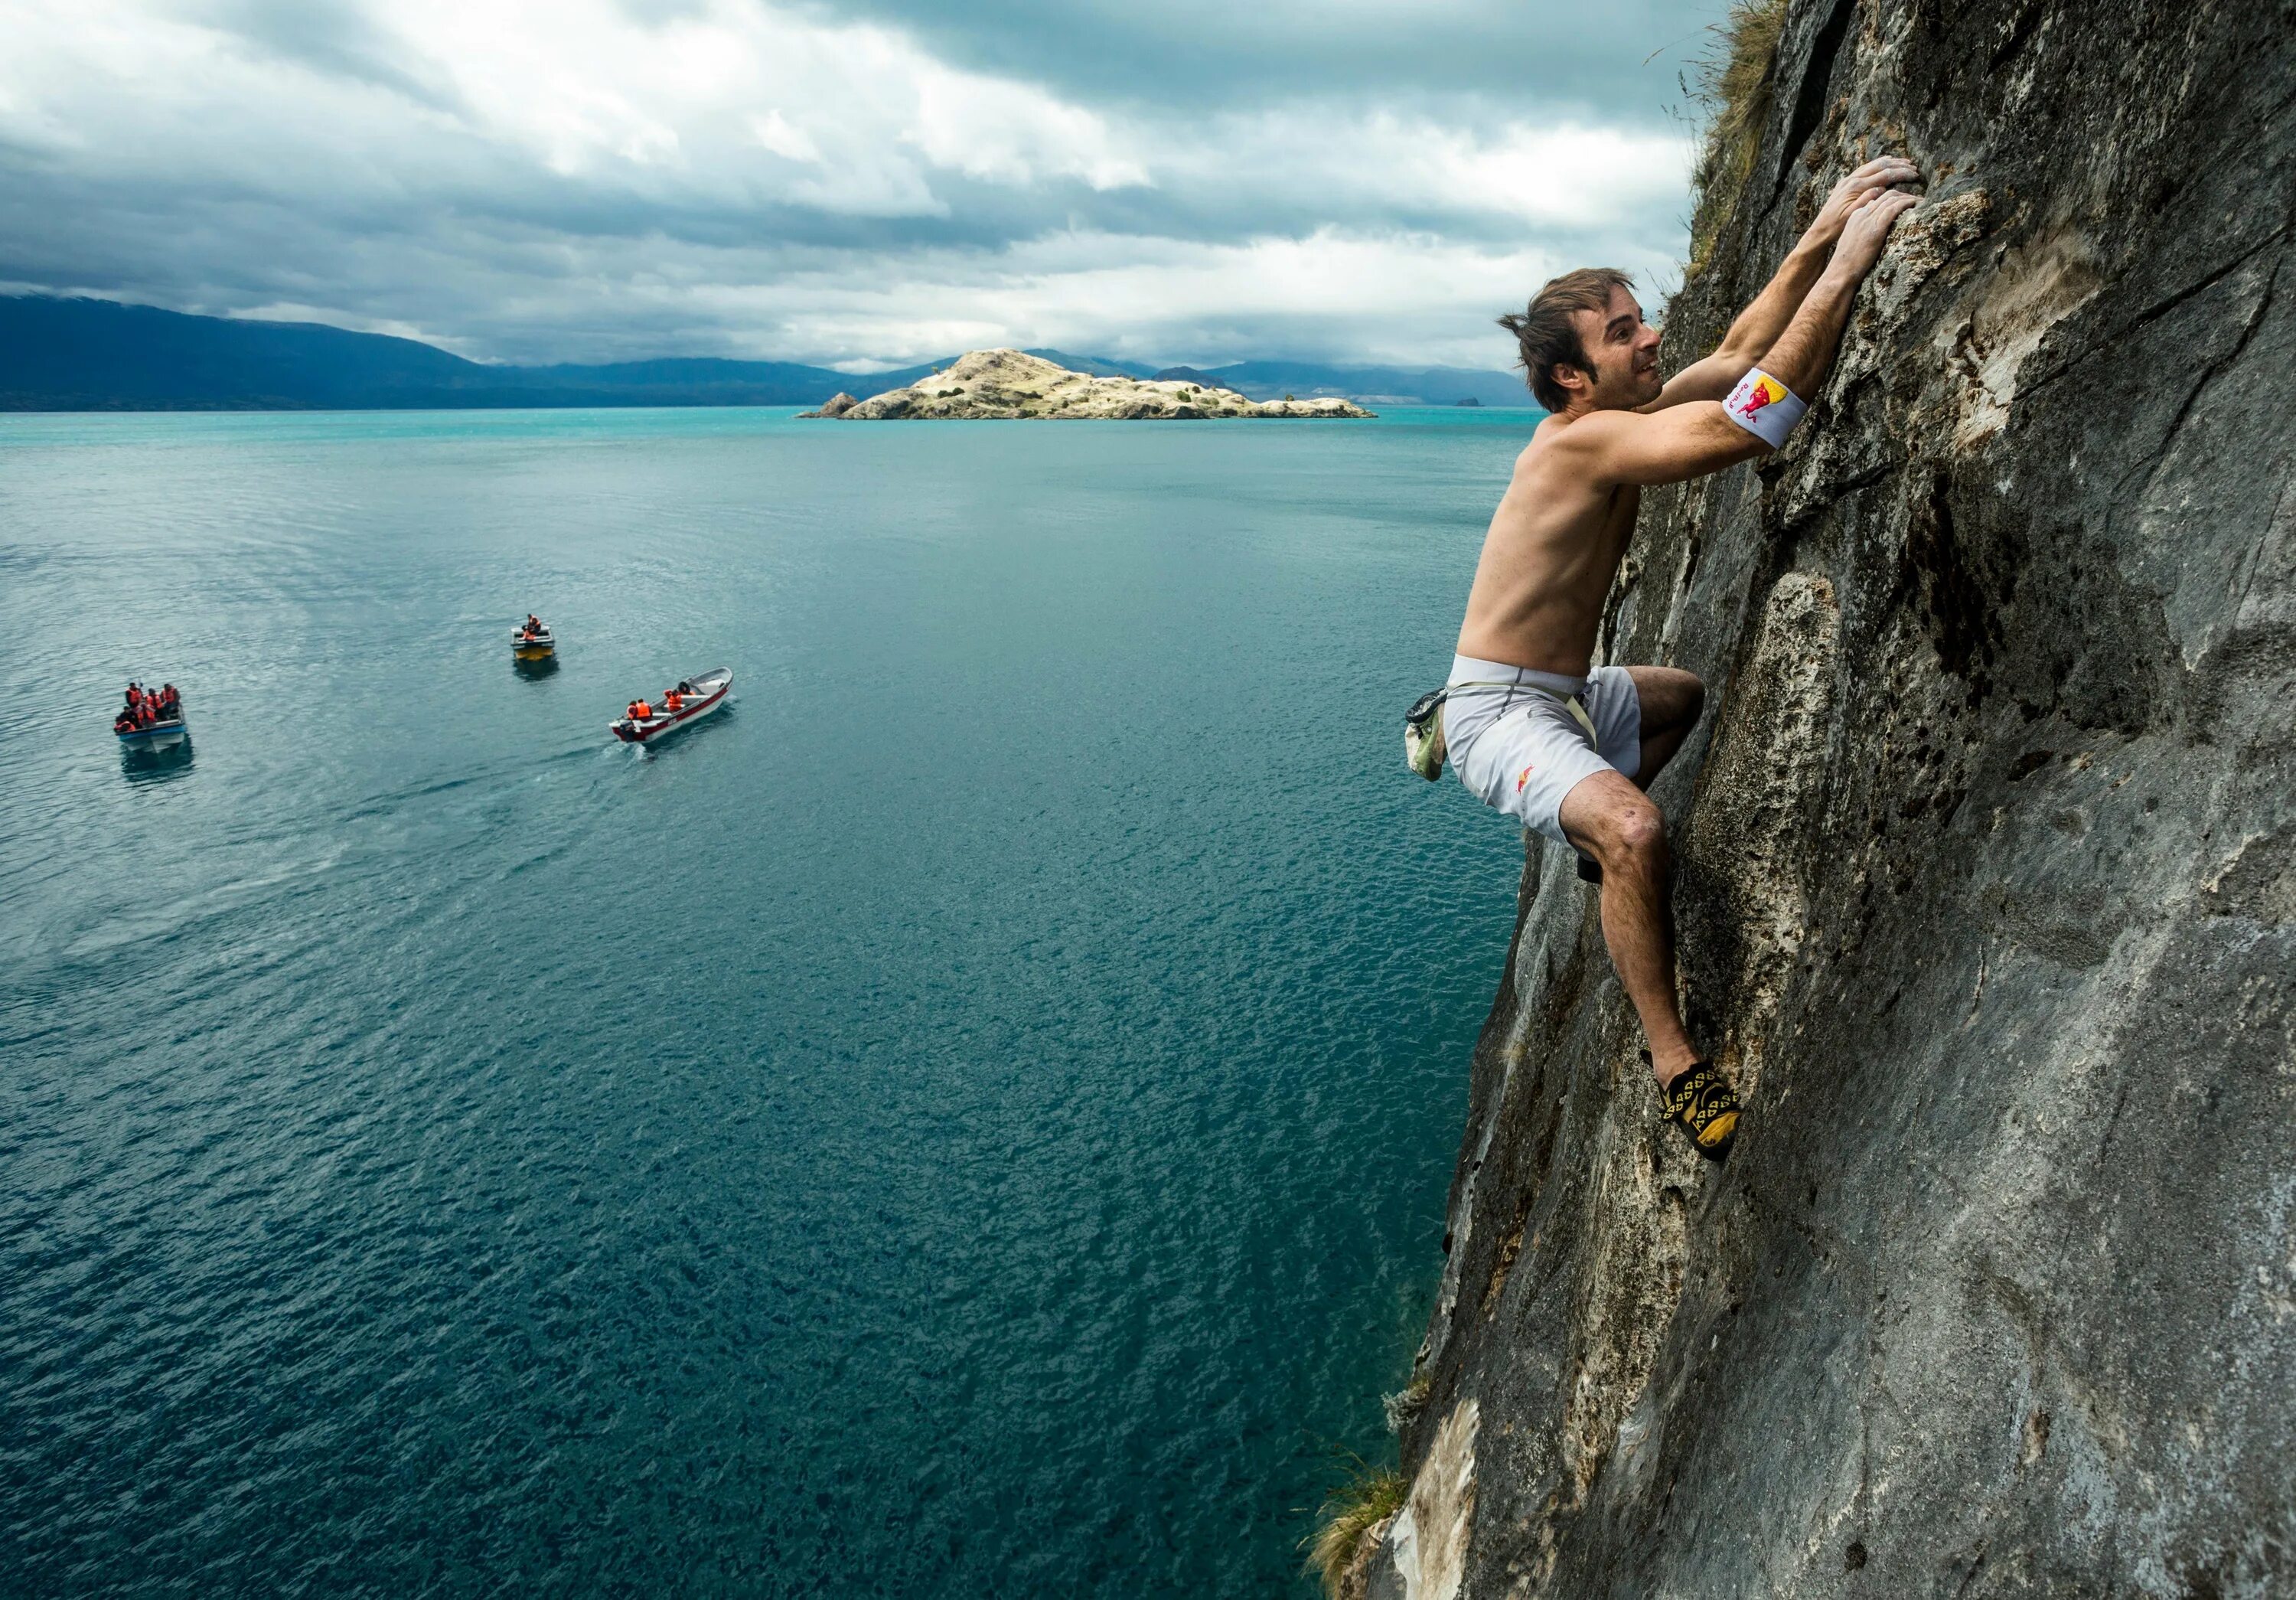 Dangerous adventure. Deep-Water solo скалолазание. Deep Water solo в Крыму. Скалолаз над морем. Прыжок в воду с горы.